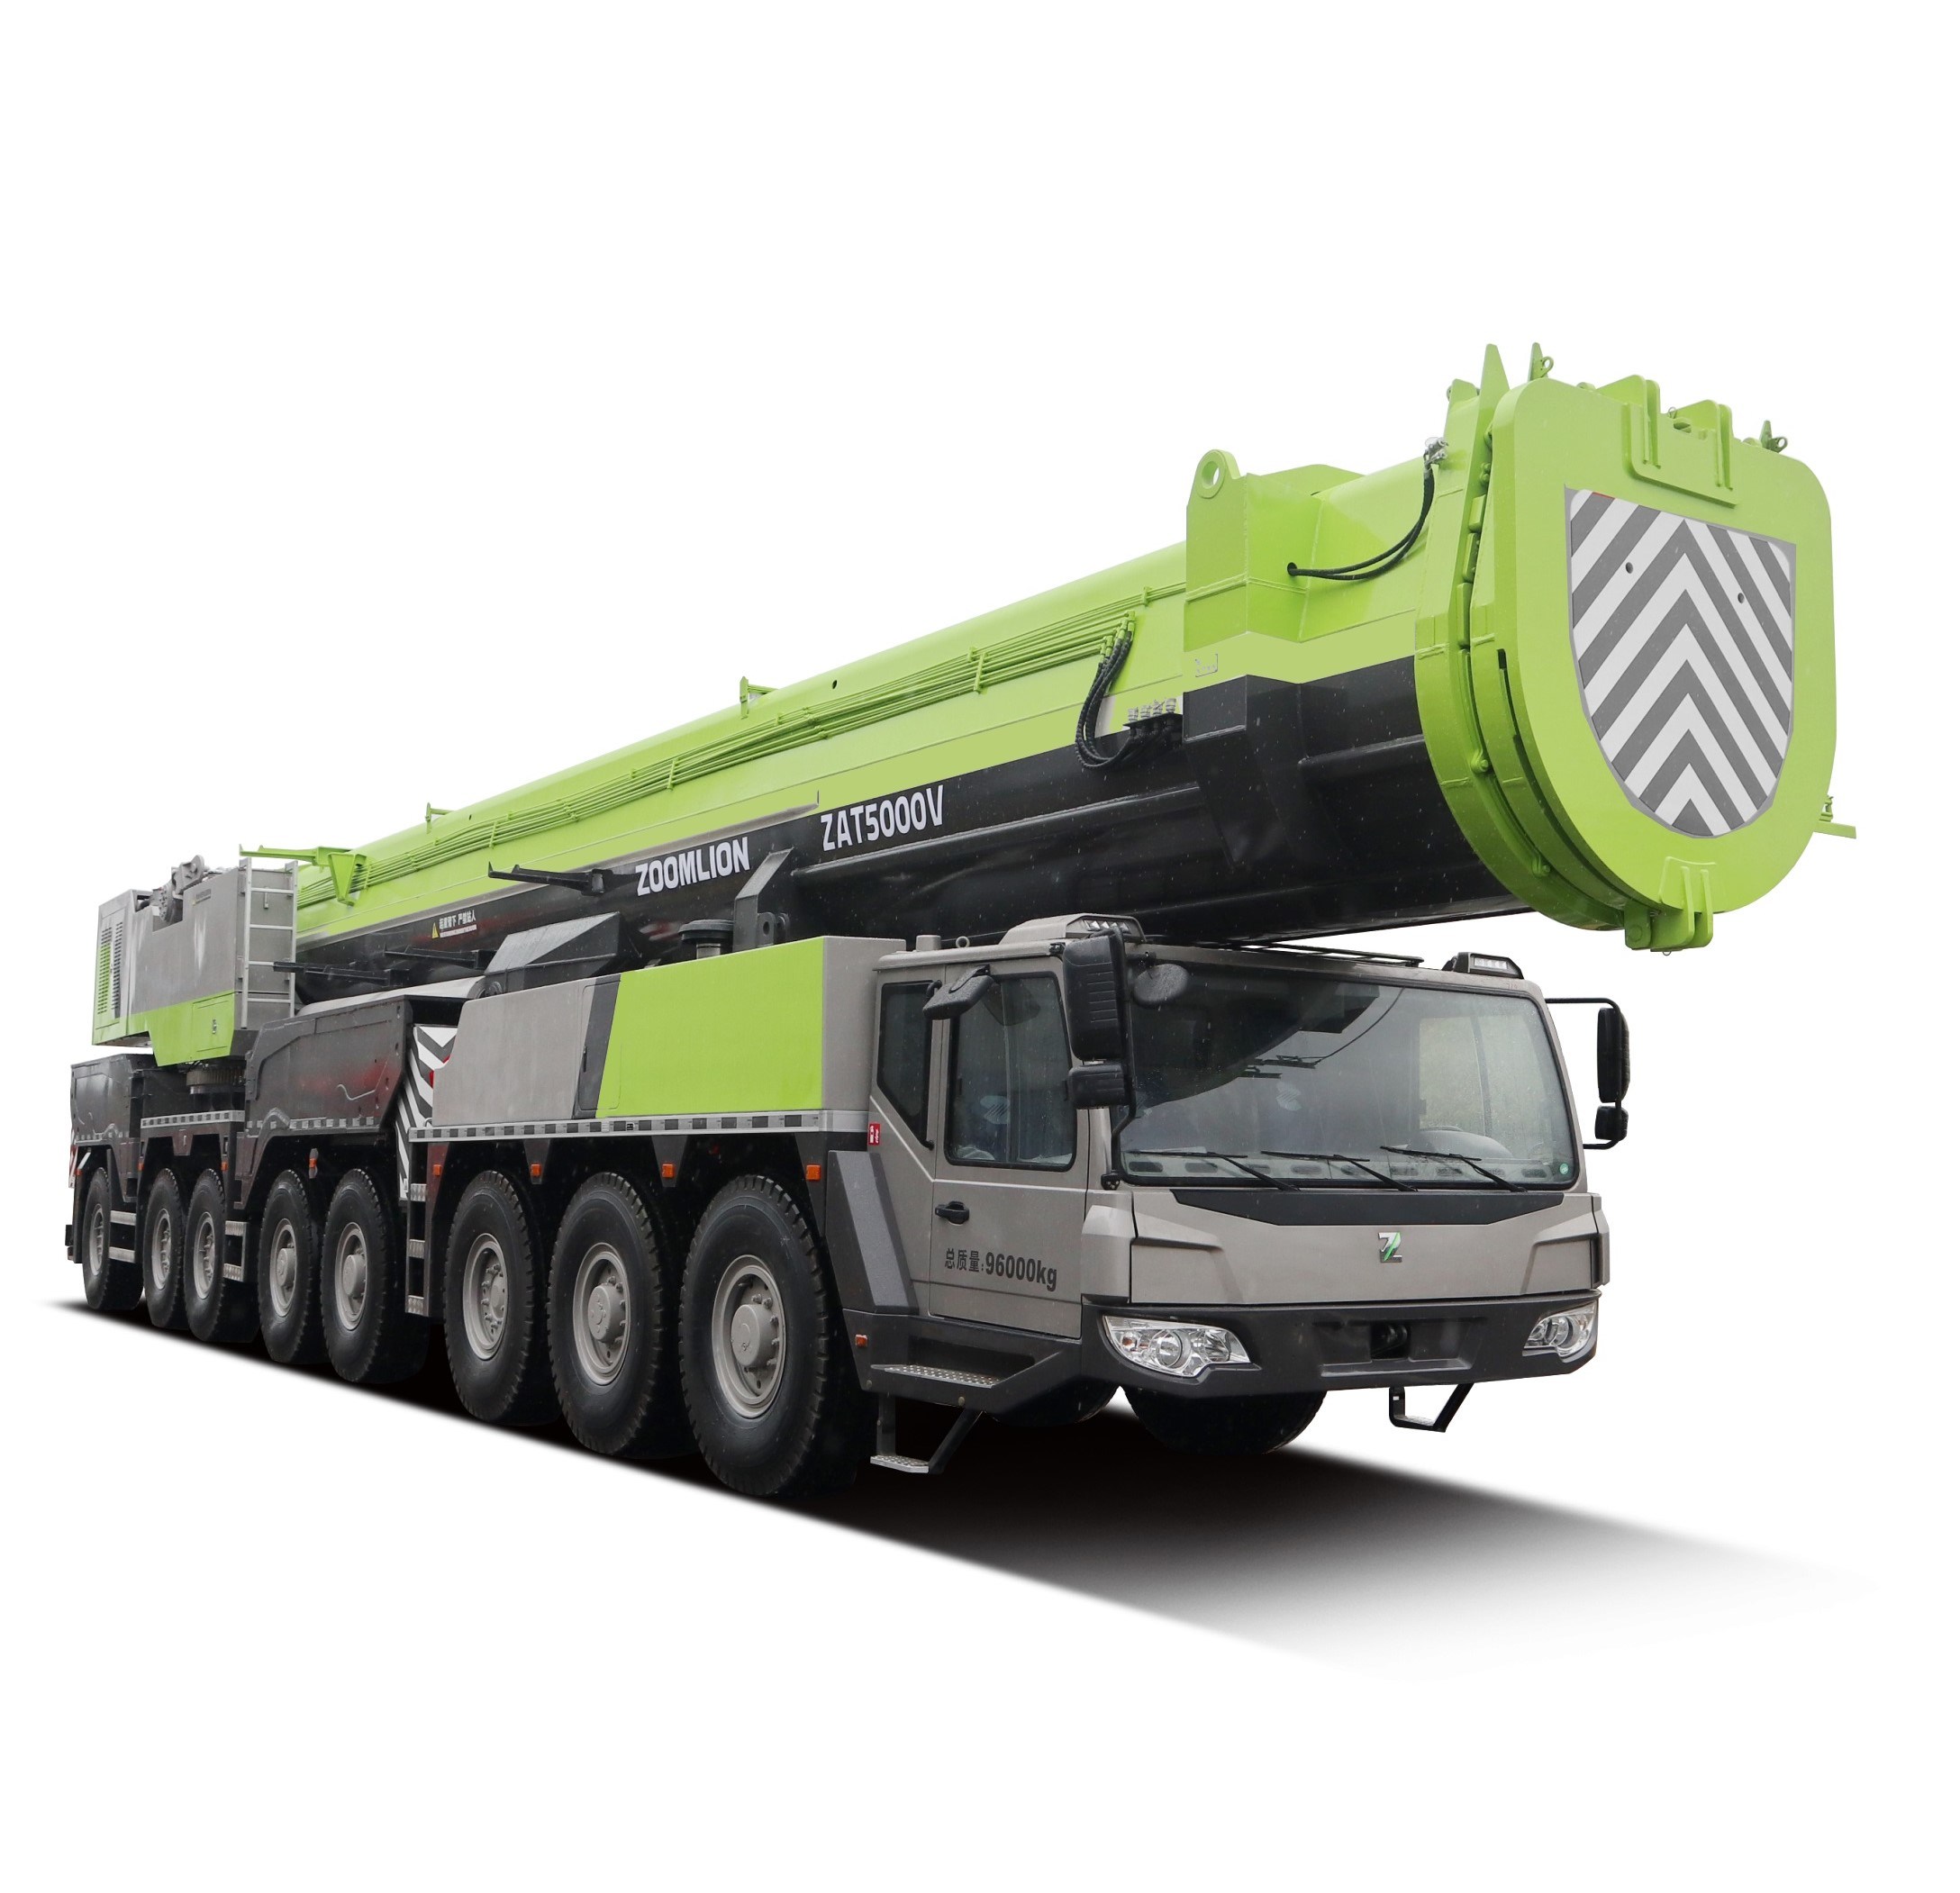 
                Grote bouw Zoomlion 130 ton hydraulische Truck Crane voor alle terreinen Ztc1300V met 7 Sectie 103,5m bij het bereiken van de hoogte
            